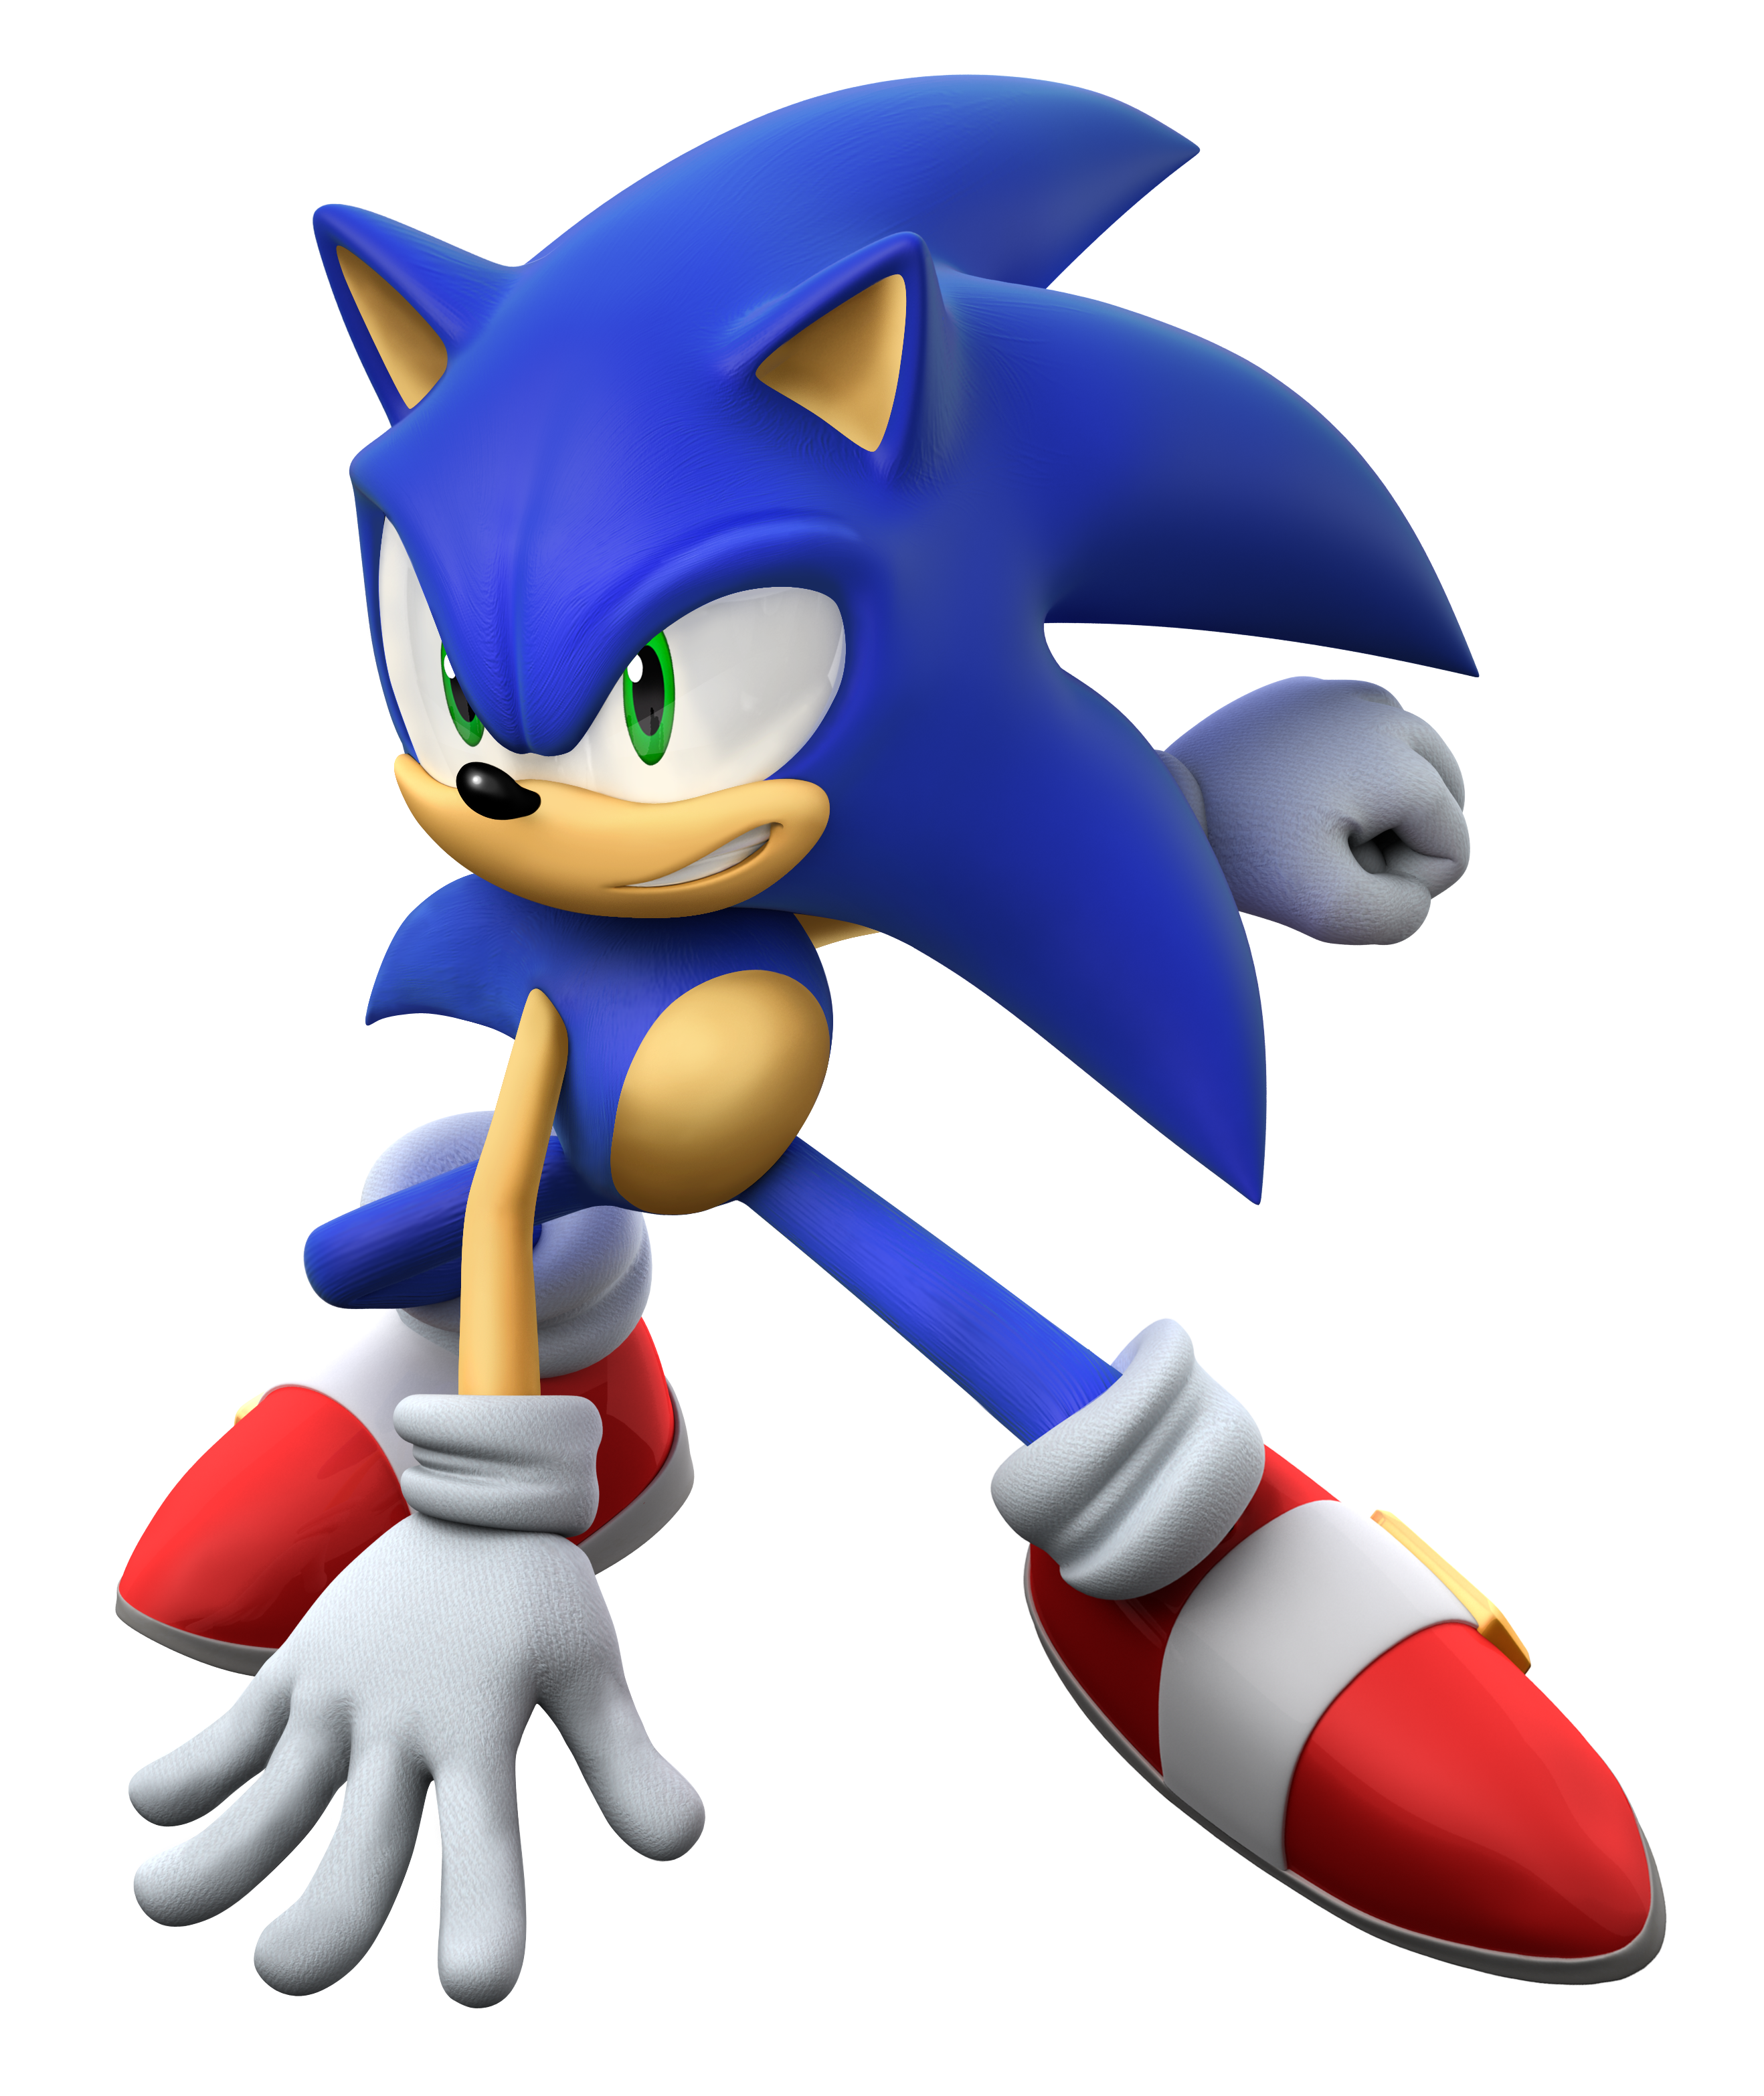 Sonic_The_Hedgehog_Wallpaper_by_Prowerma